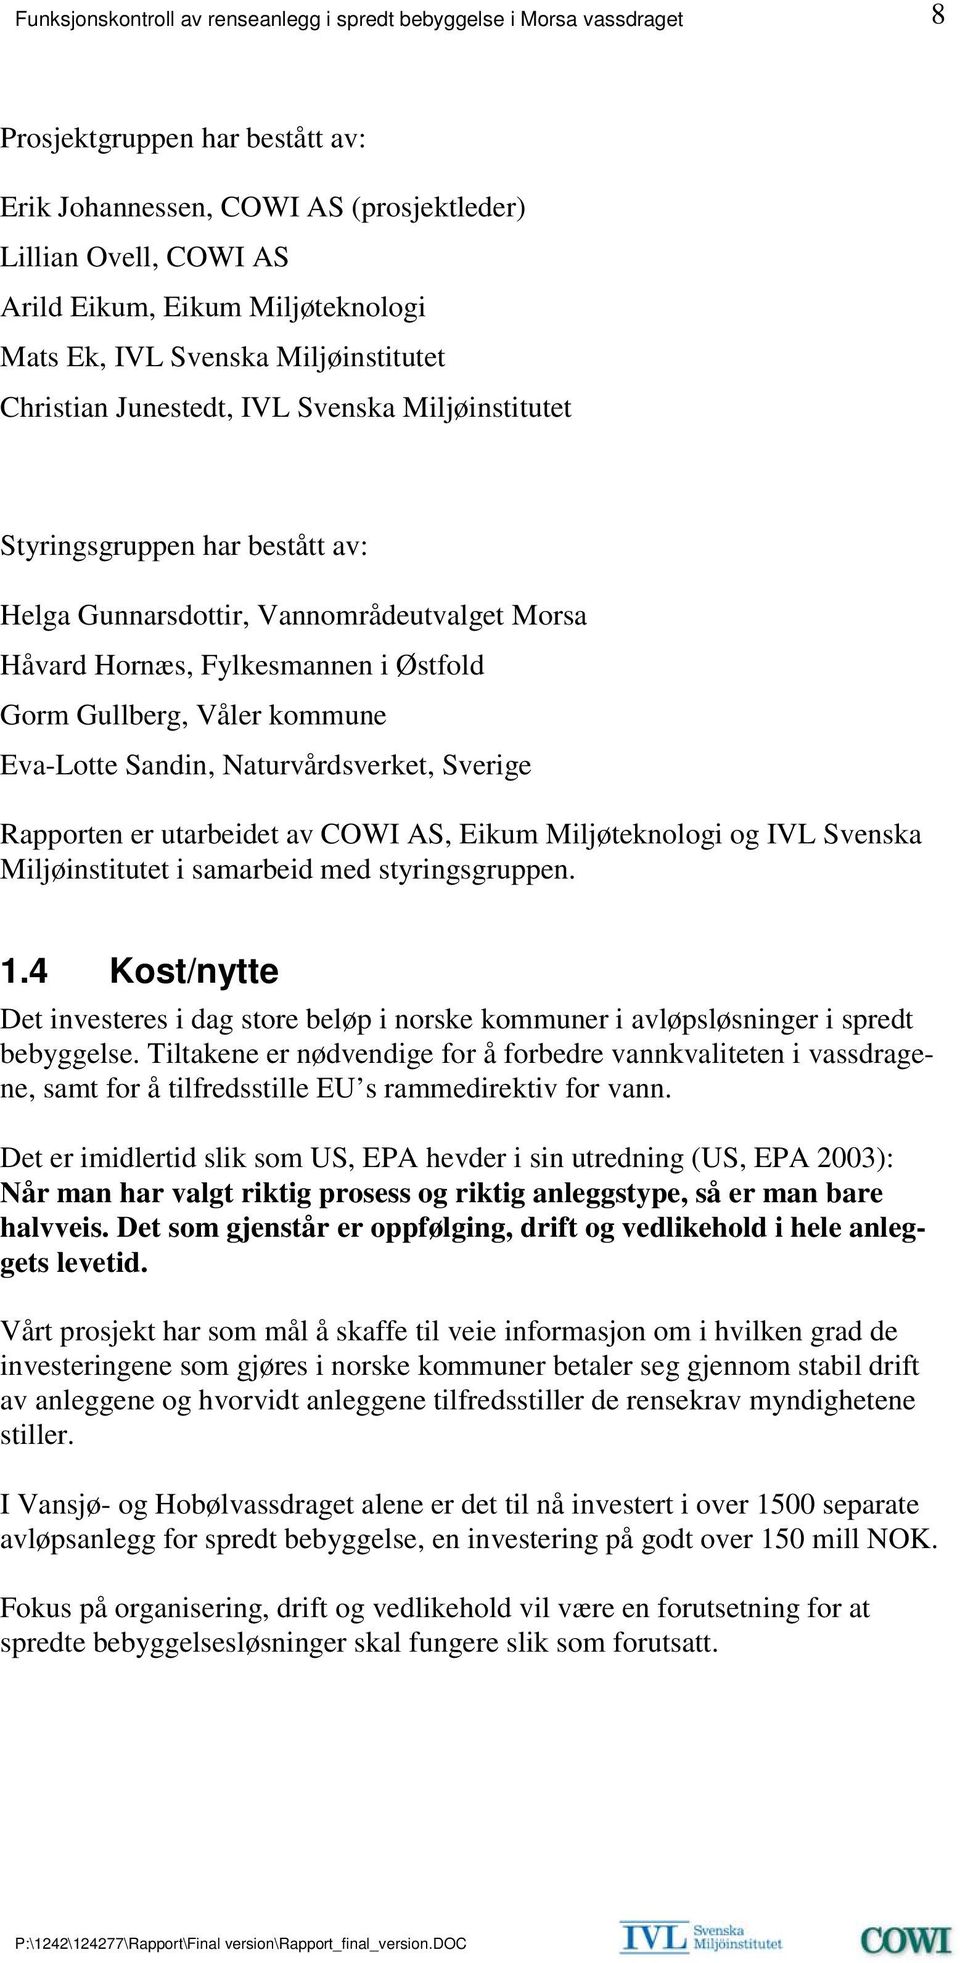 Naturvårdsverket, Sverige Rapporten er utarbeidet av COWI AS, Eikum Miljøteknologi og IVL Svenska Miljøinstitutet i samarbeid med styringsgruppen. 1.